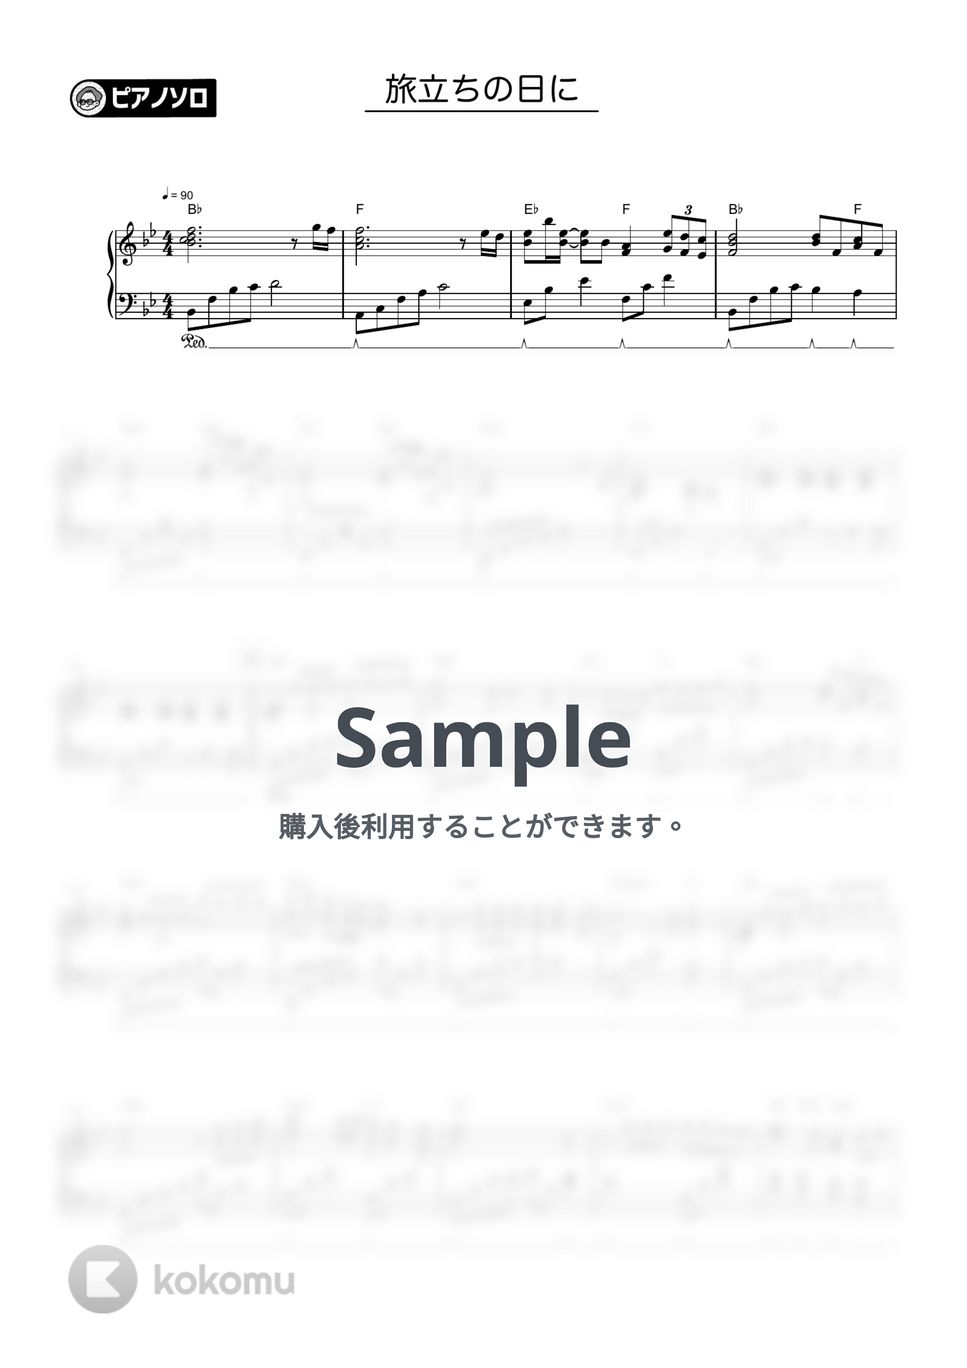 合唱曲 - 旅立ちの日に by シータピアノ